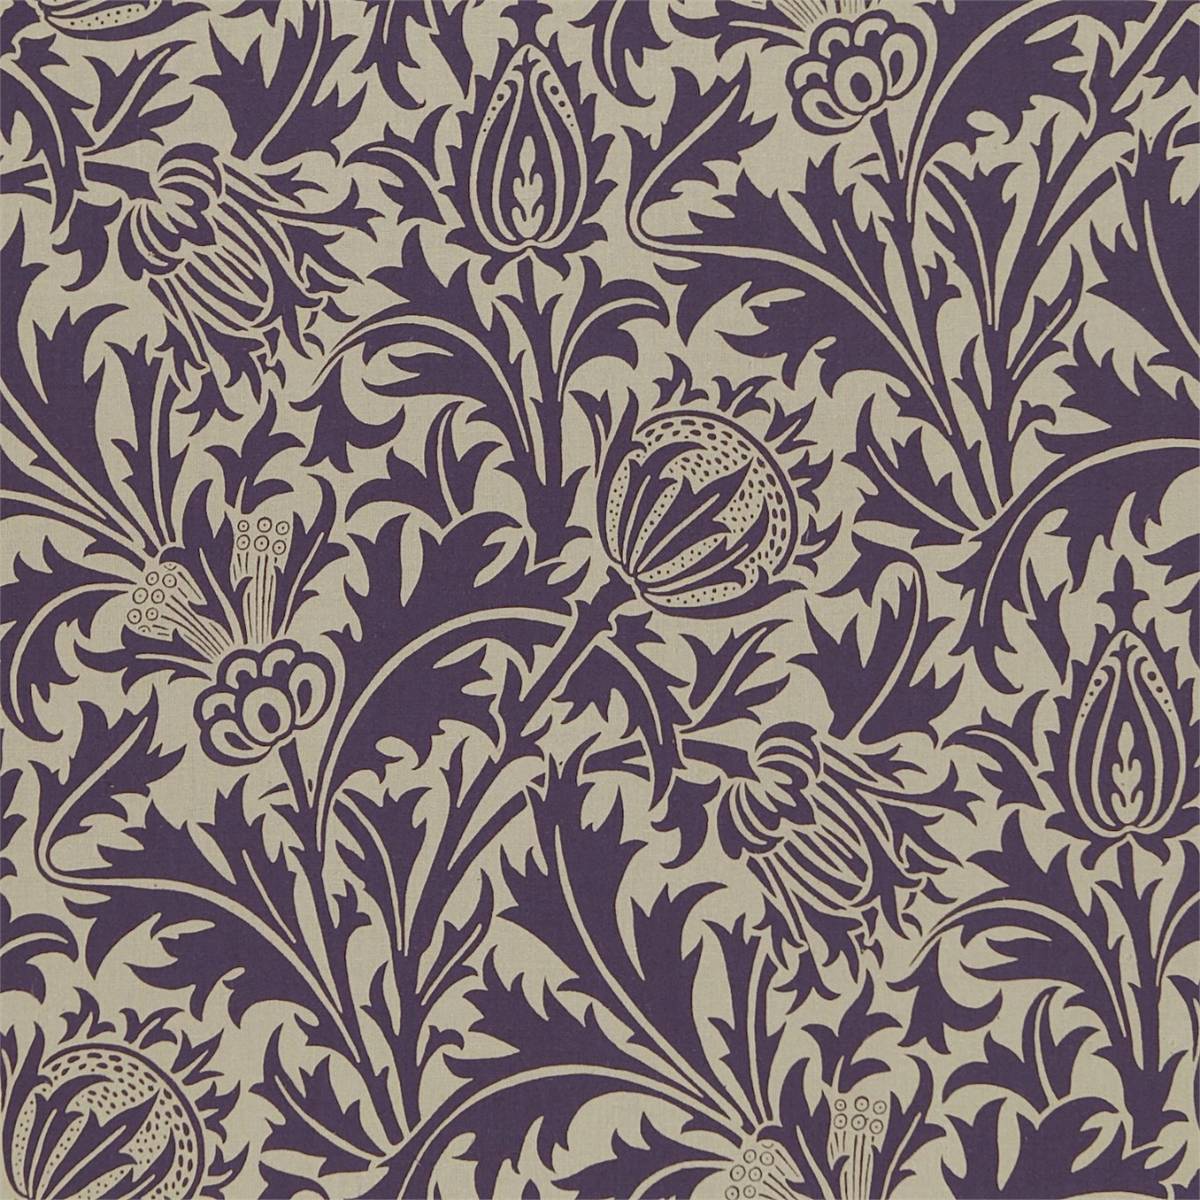 Thistle Grape/Vellum Fabric by William Morris & Co.